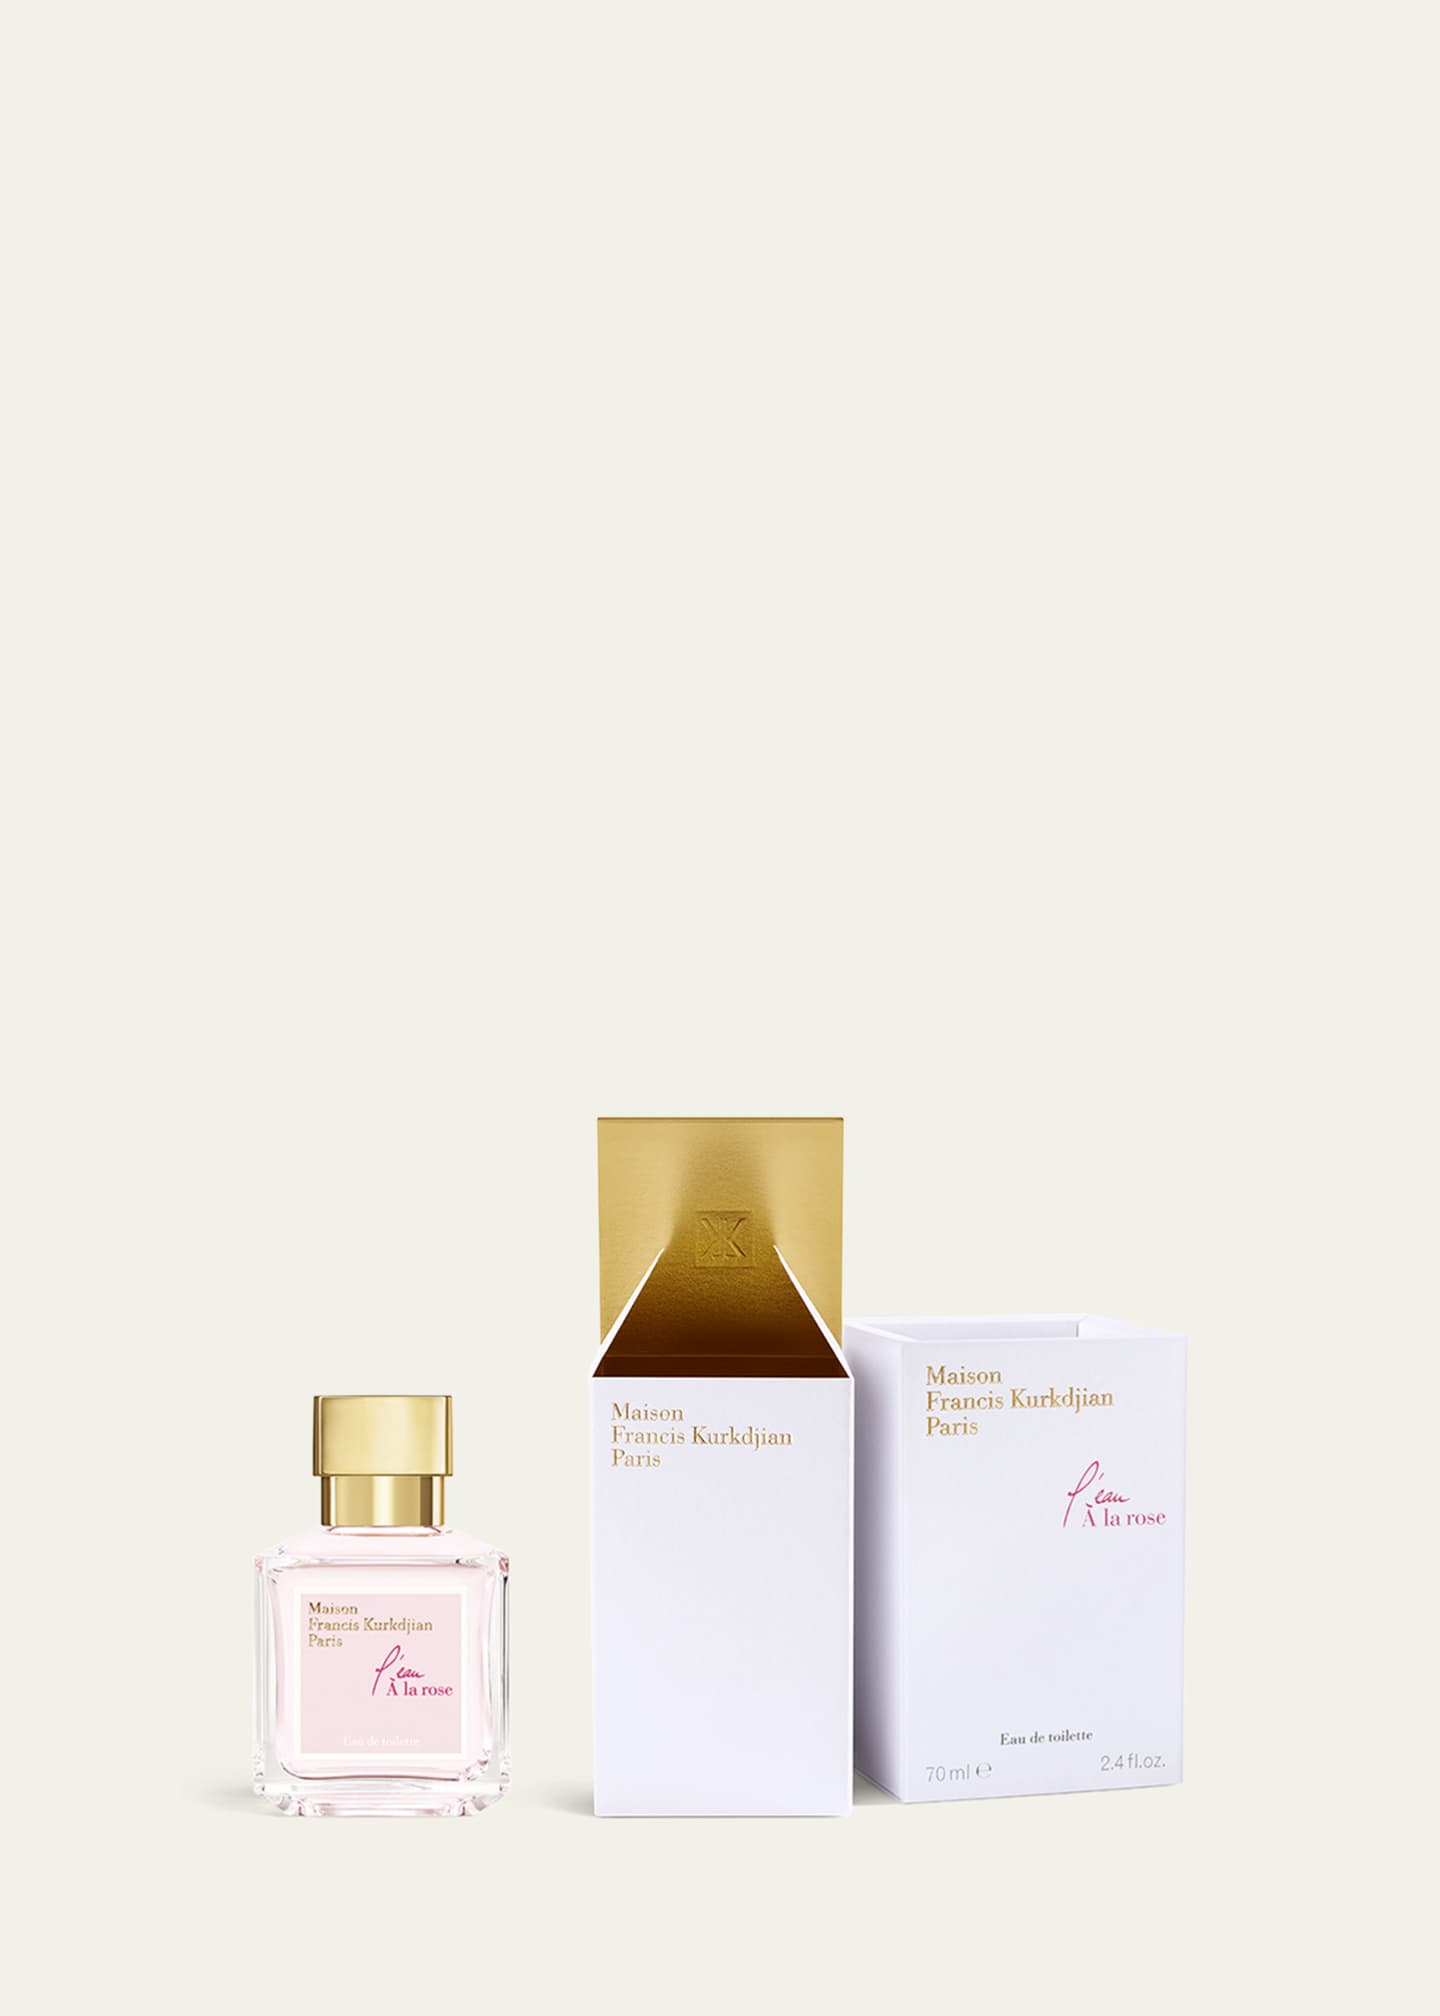 Maison Francis Kurkdjian 2.4 oz. A La Rose Eau de Parfum